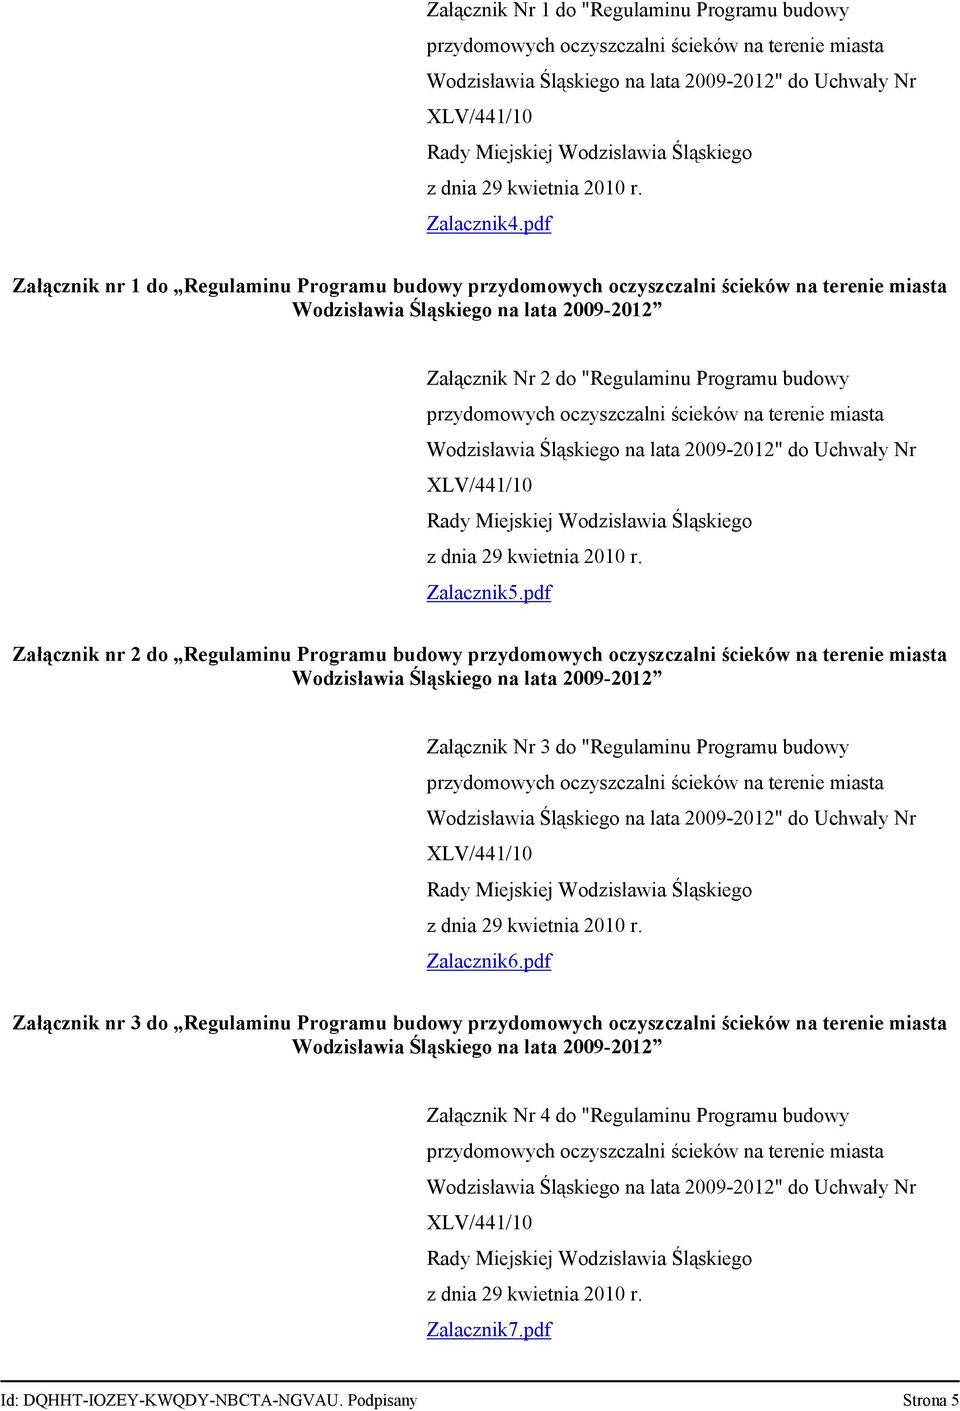 oczyszczalni ścieków na terenie miasta Wodzisławia Śląskiego na lata 2009-2012" do Uchwały Nr XLV/441/10 Zalacznik5.